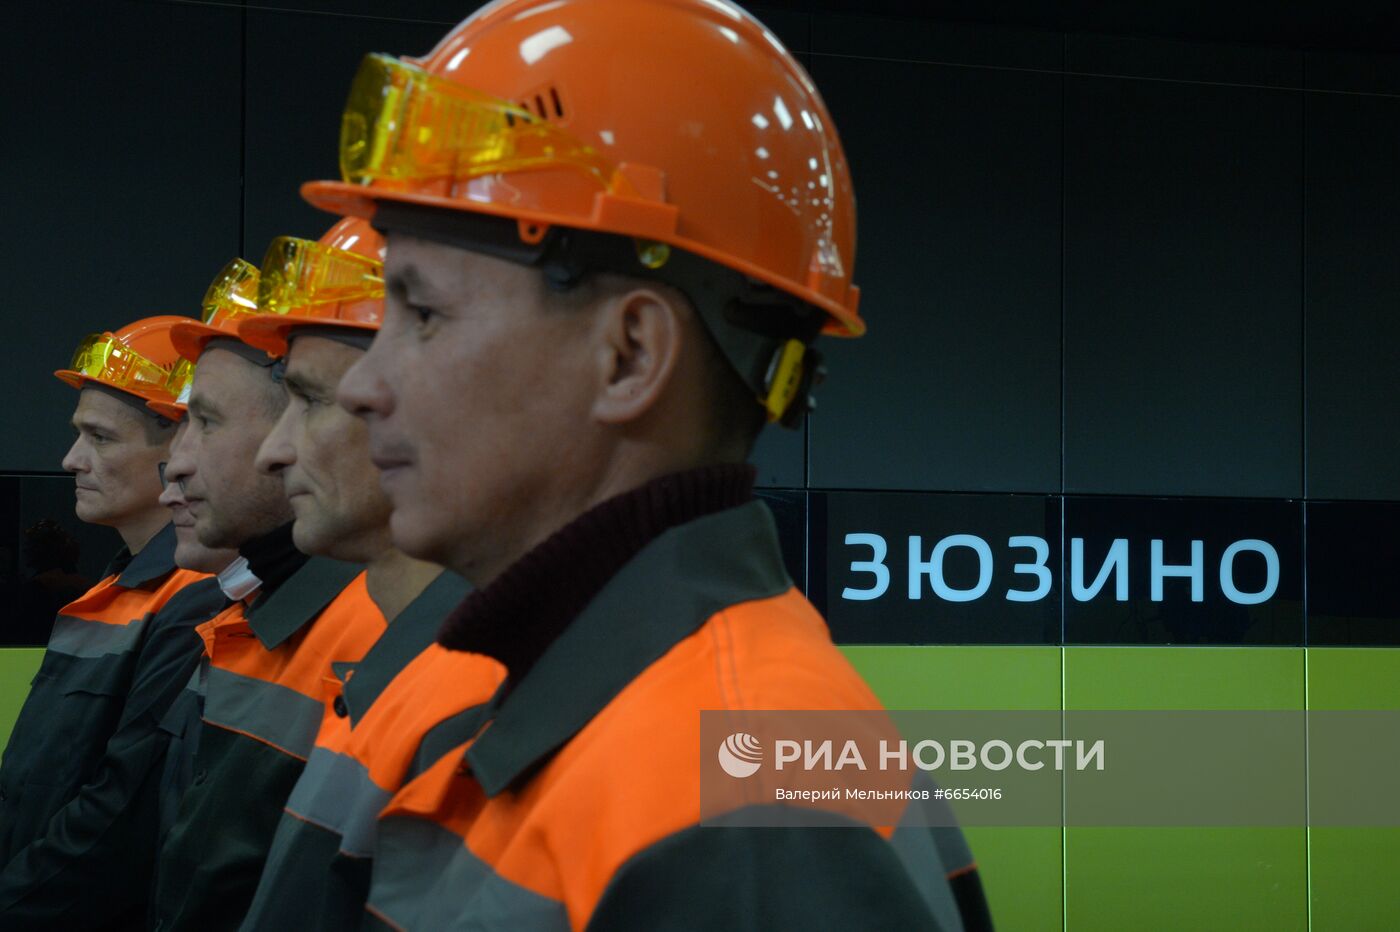 Технический запуск станций БКЛ на юге Москвы 